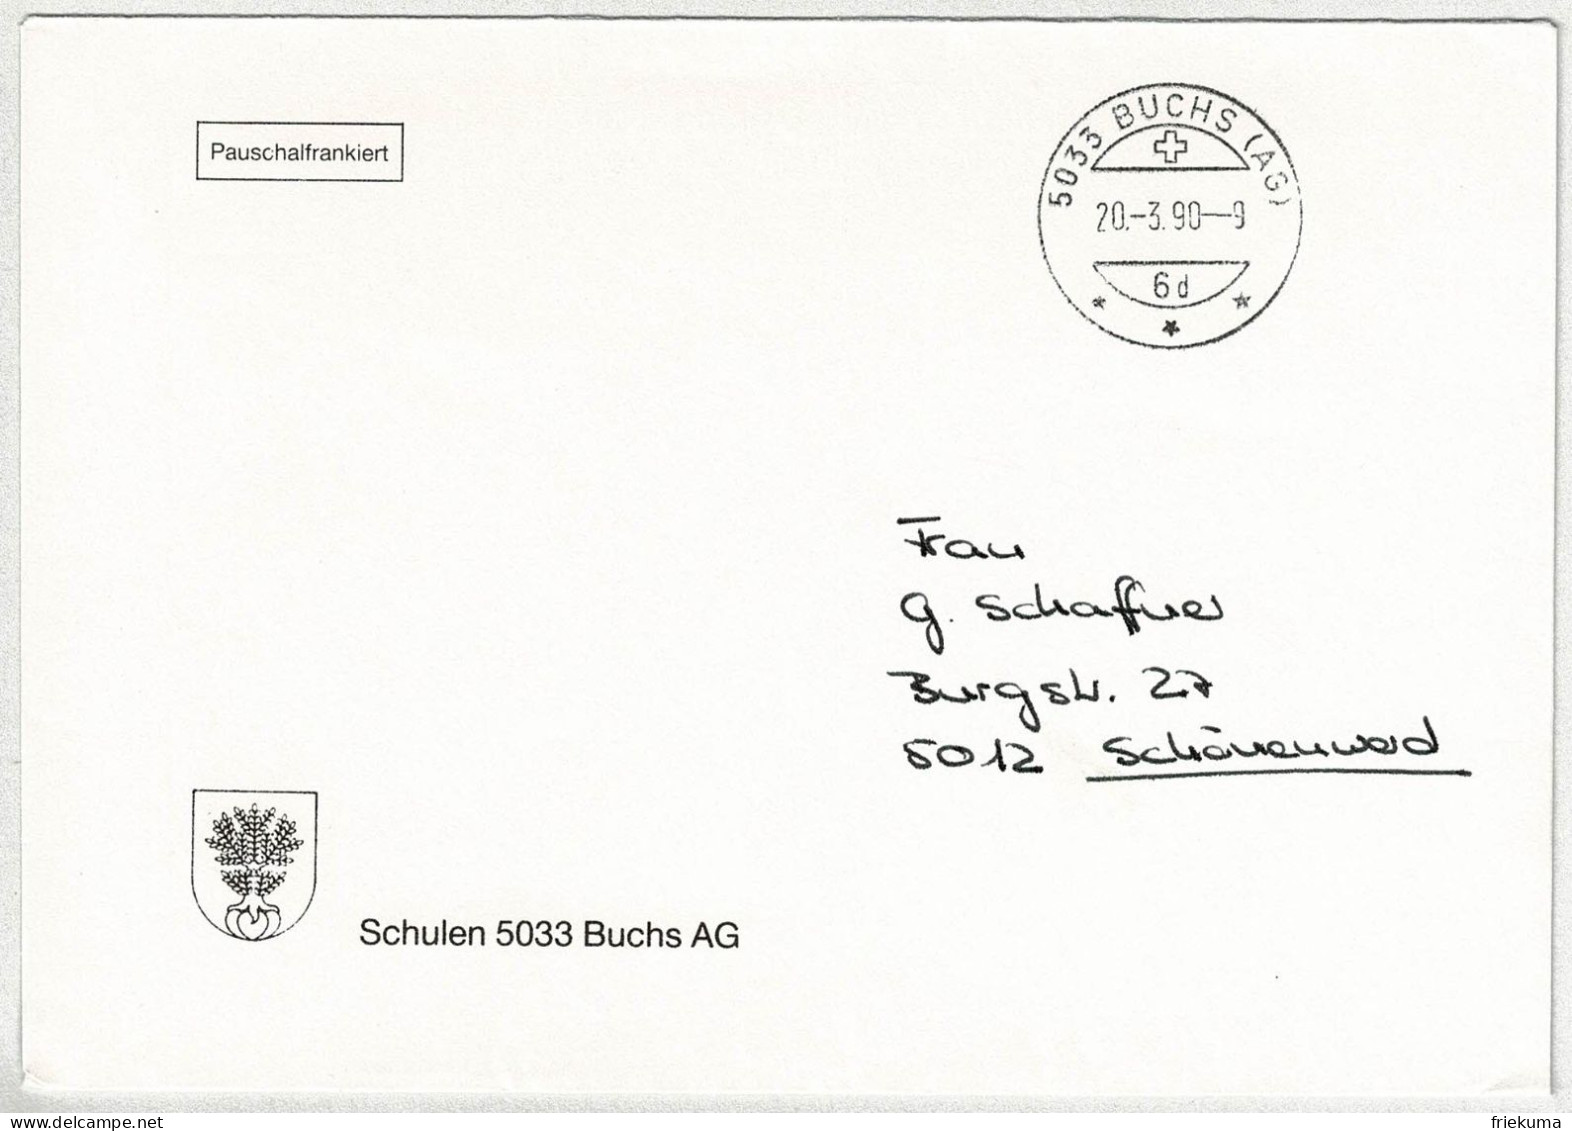 Schweiz 1990, Brief Pauschalfrankiert Buchs - Schönenwerd - Marcofilie